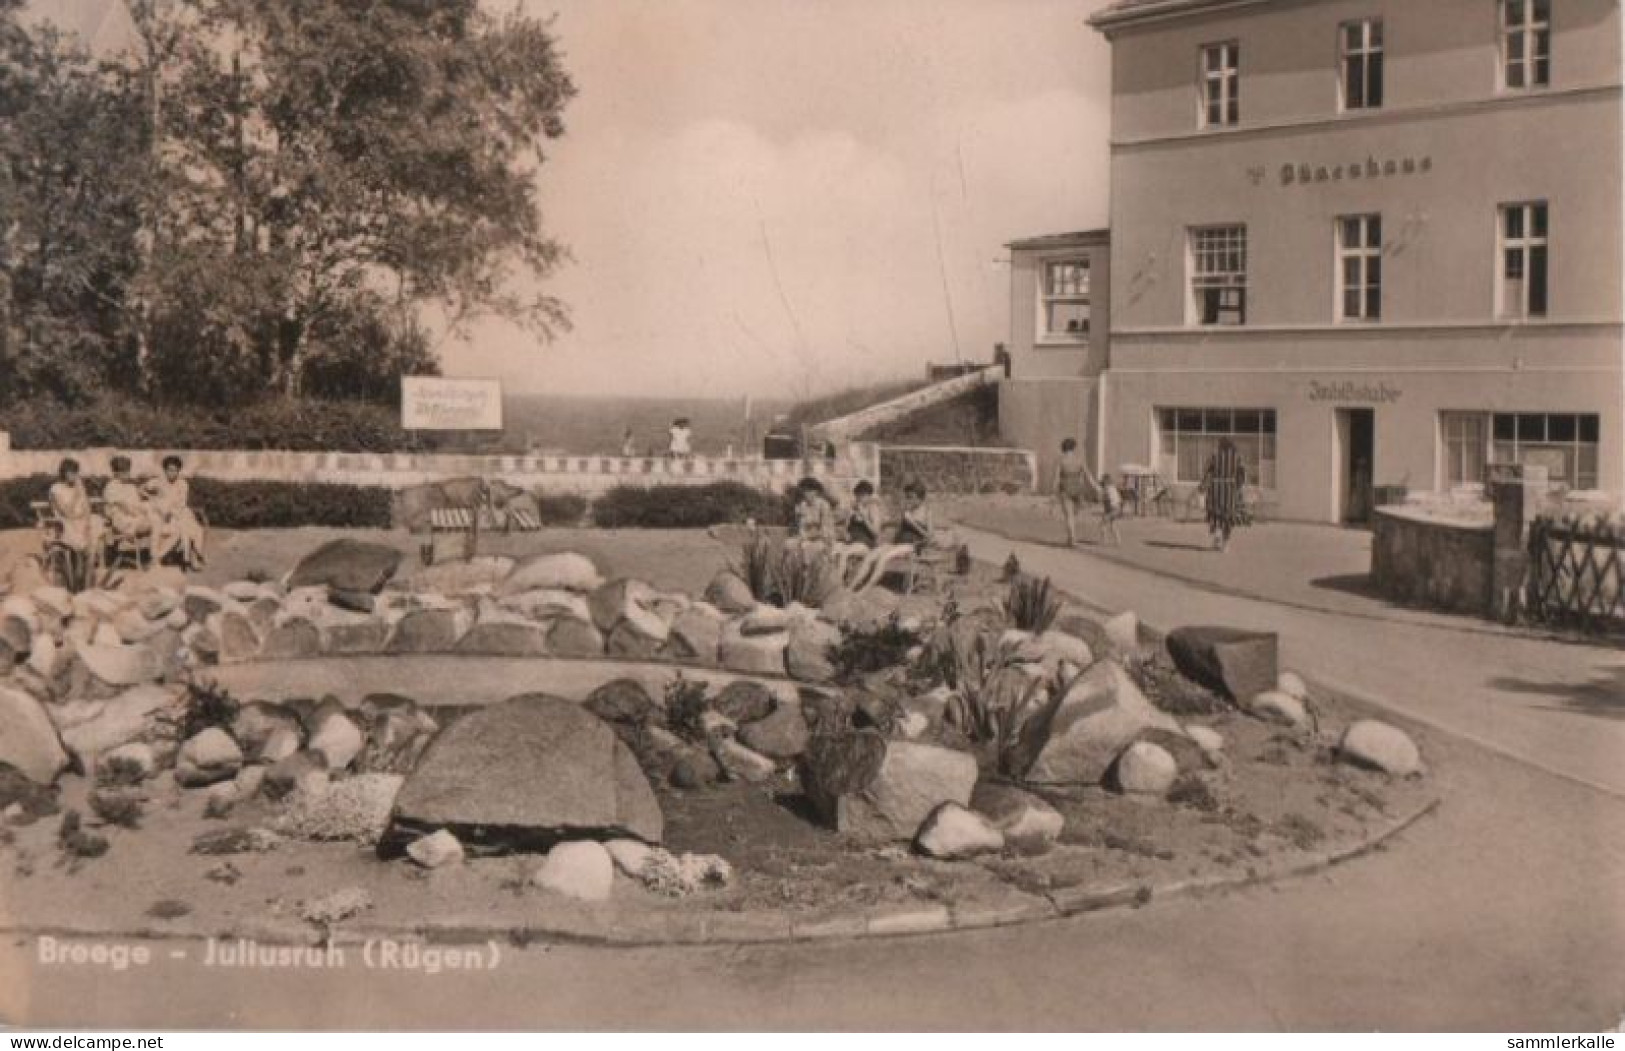 86117 - Breege - Juliusruh - Ca. 1965 - Stralsund